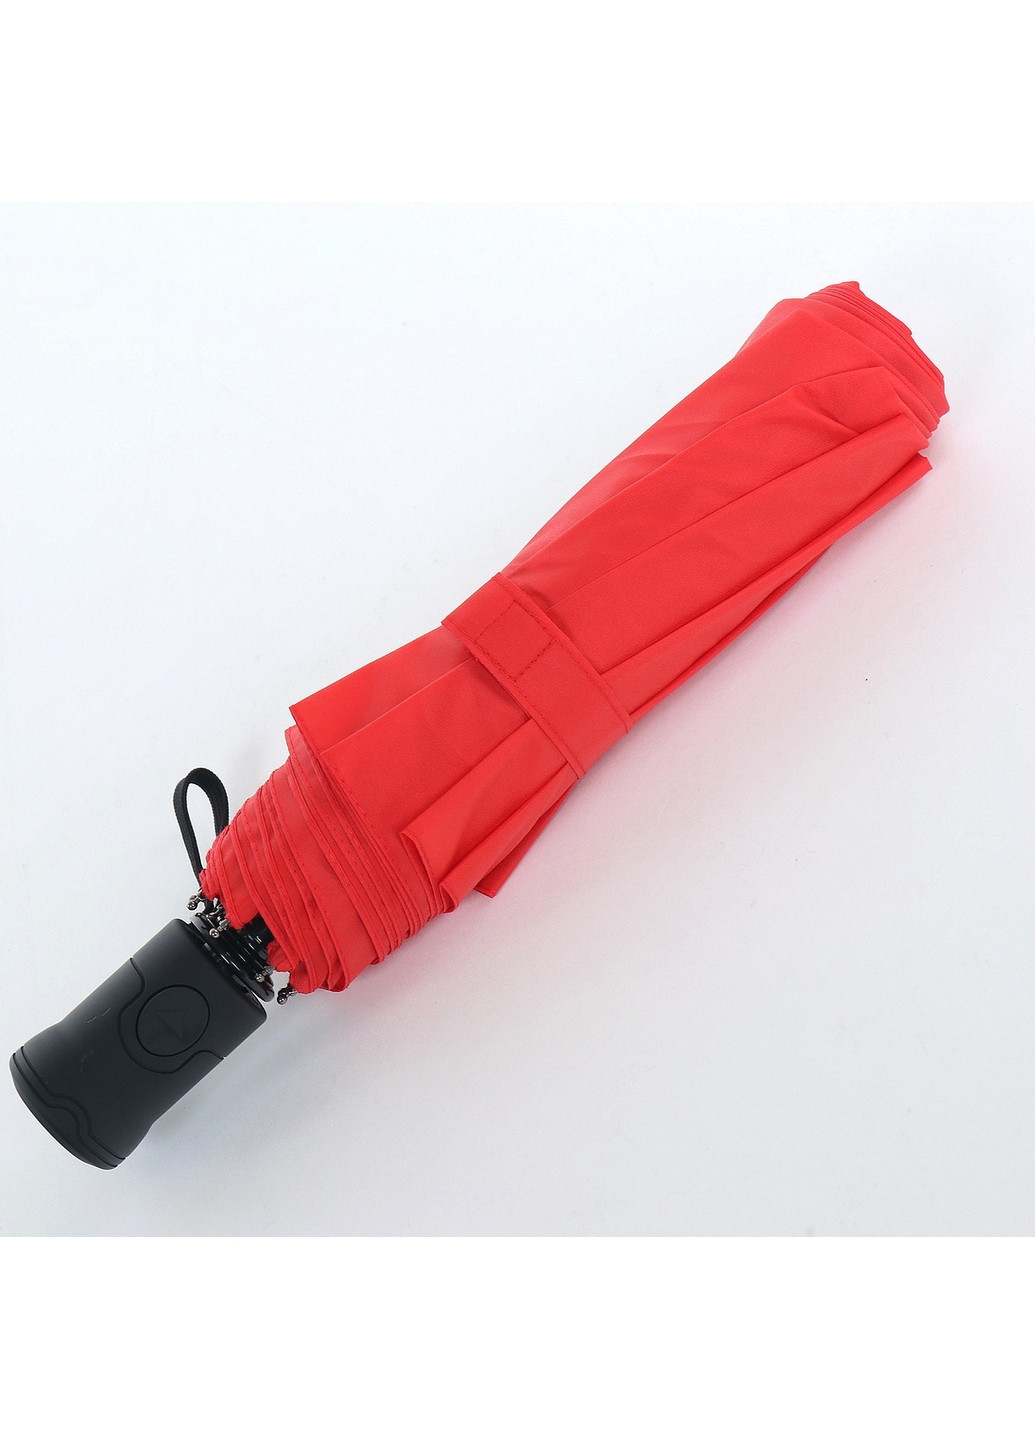 Складной женский зонт полуавтомат 98 см ArtRain (260286003)